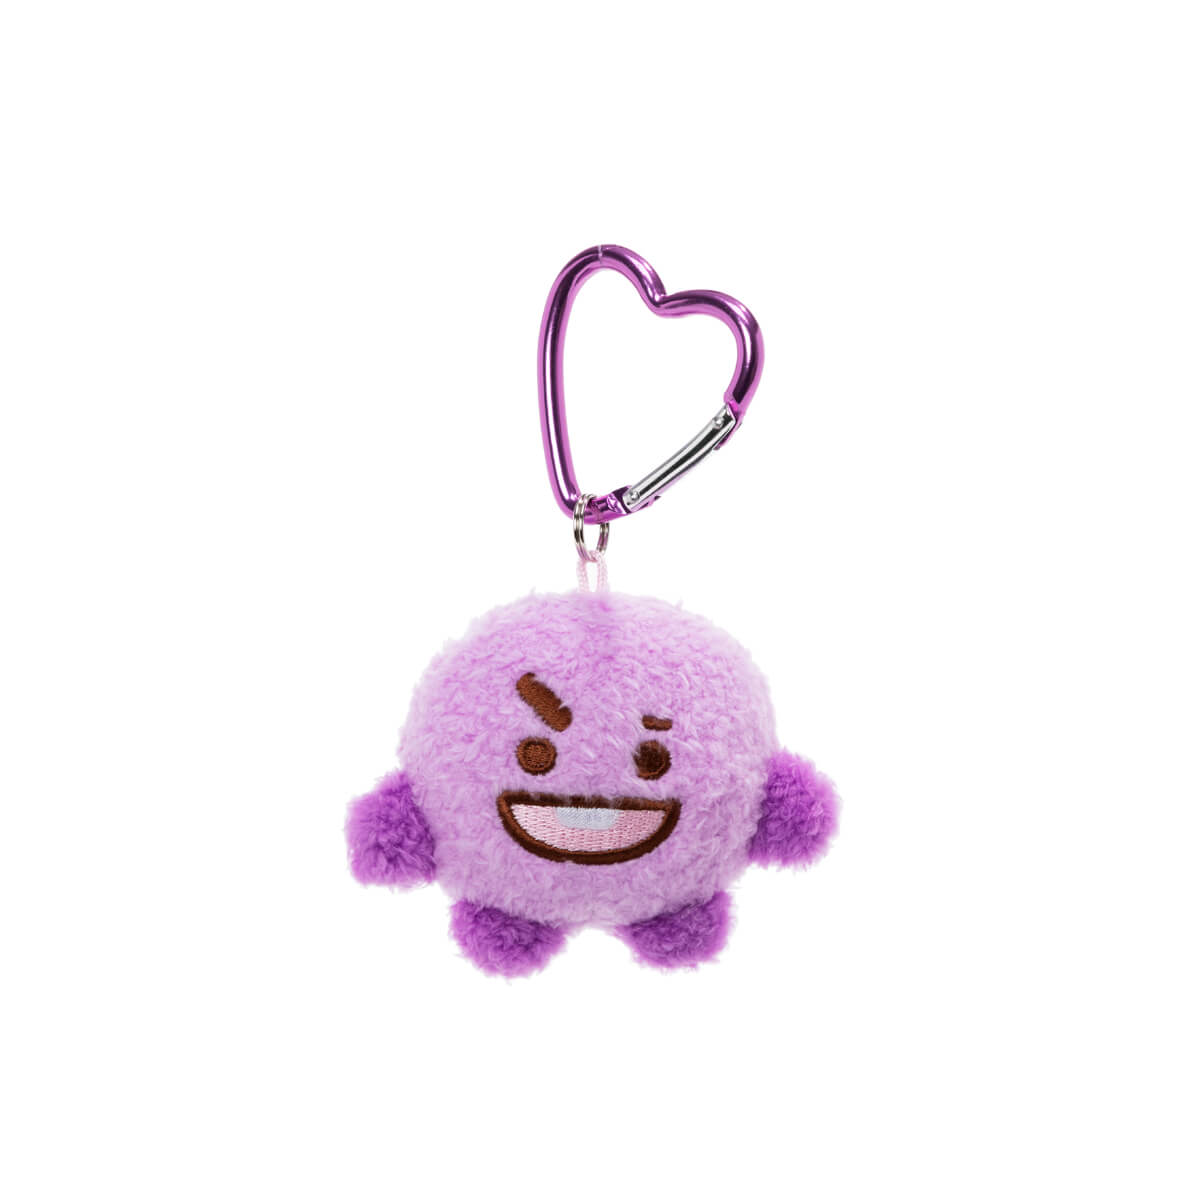 Bt21 Shooky Purple Mascot Keychain - Line Friends Inc